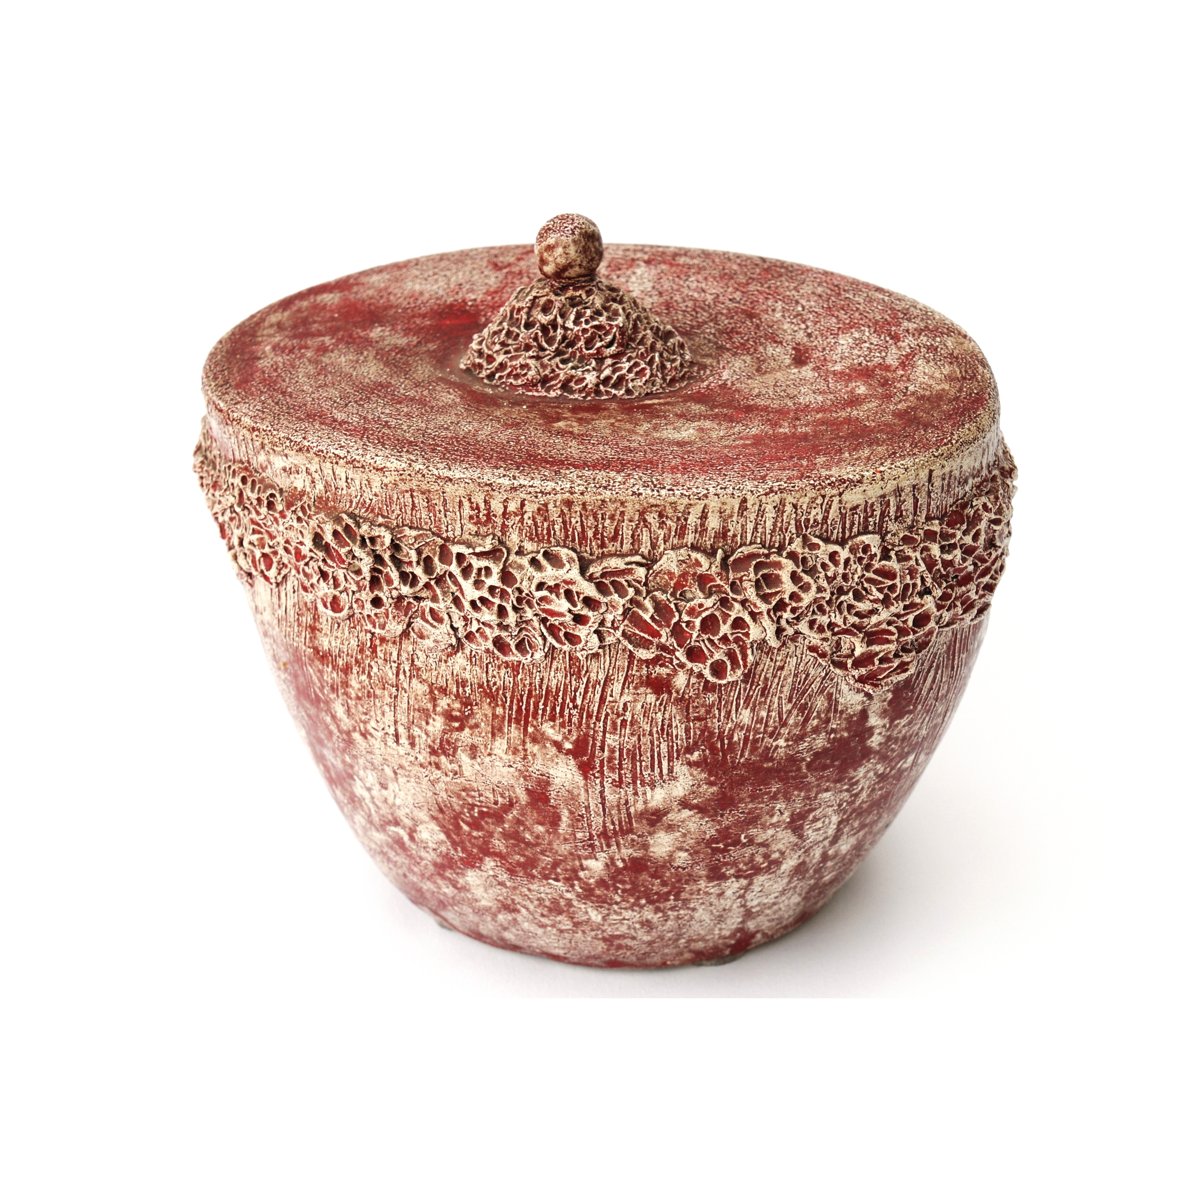 Ceramic, unique, sold